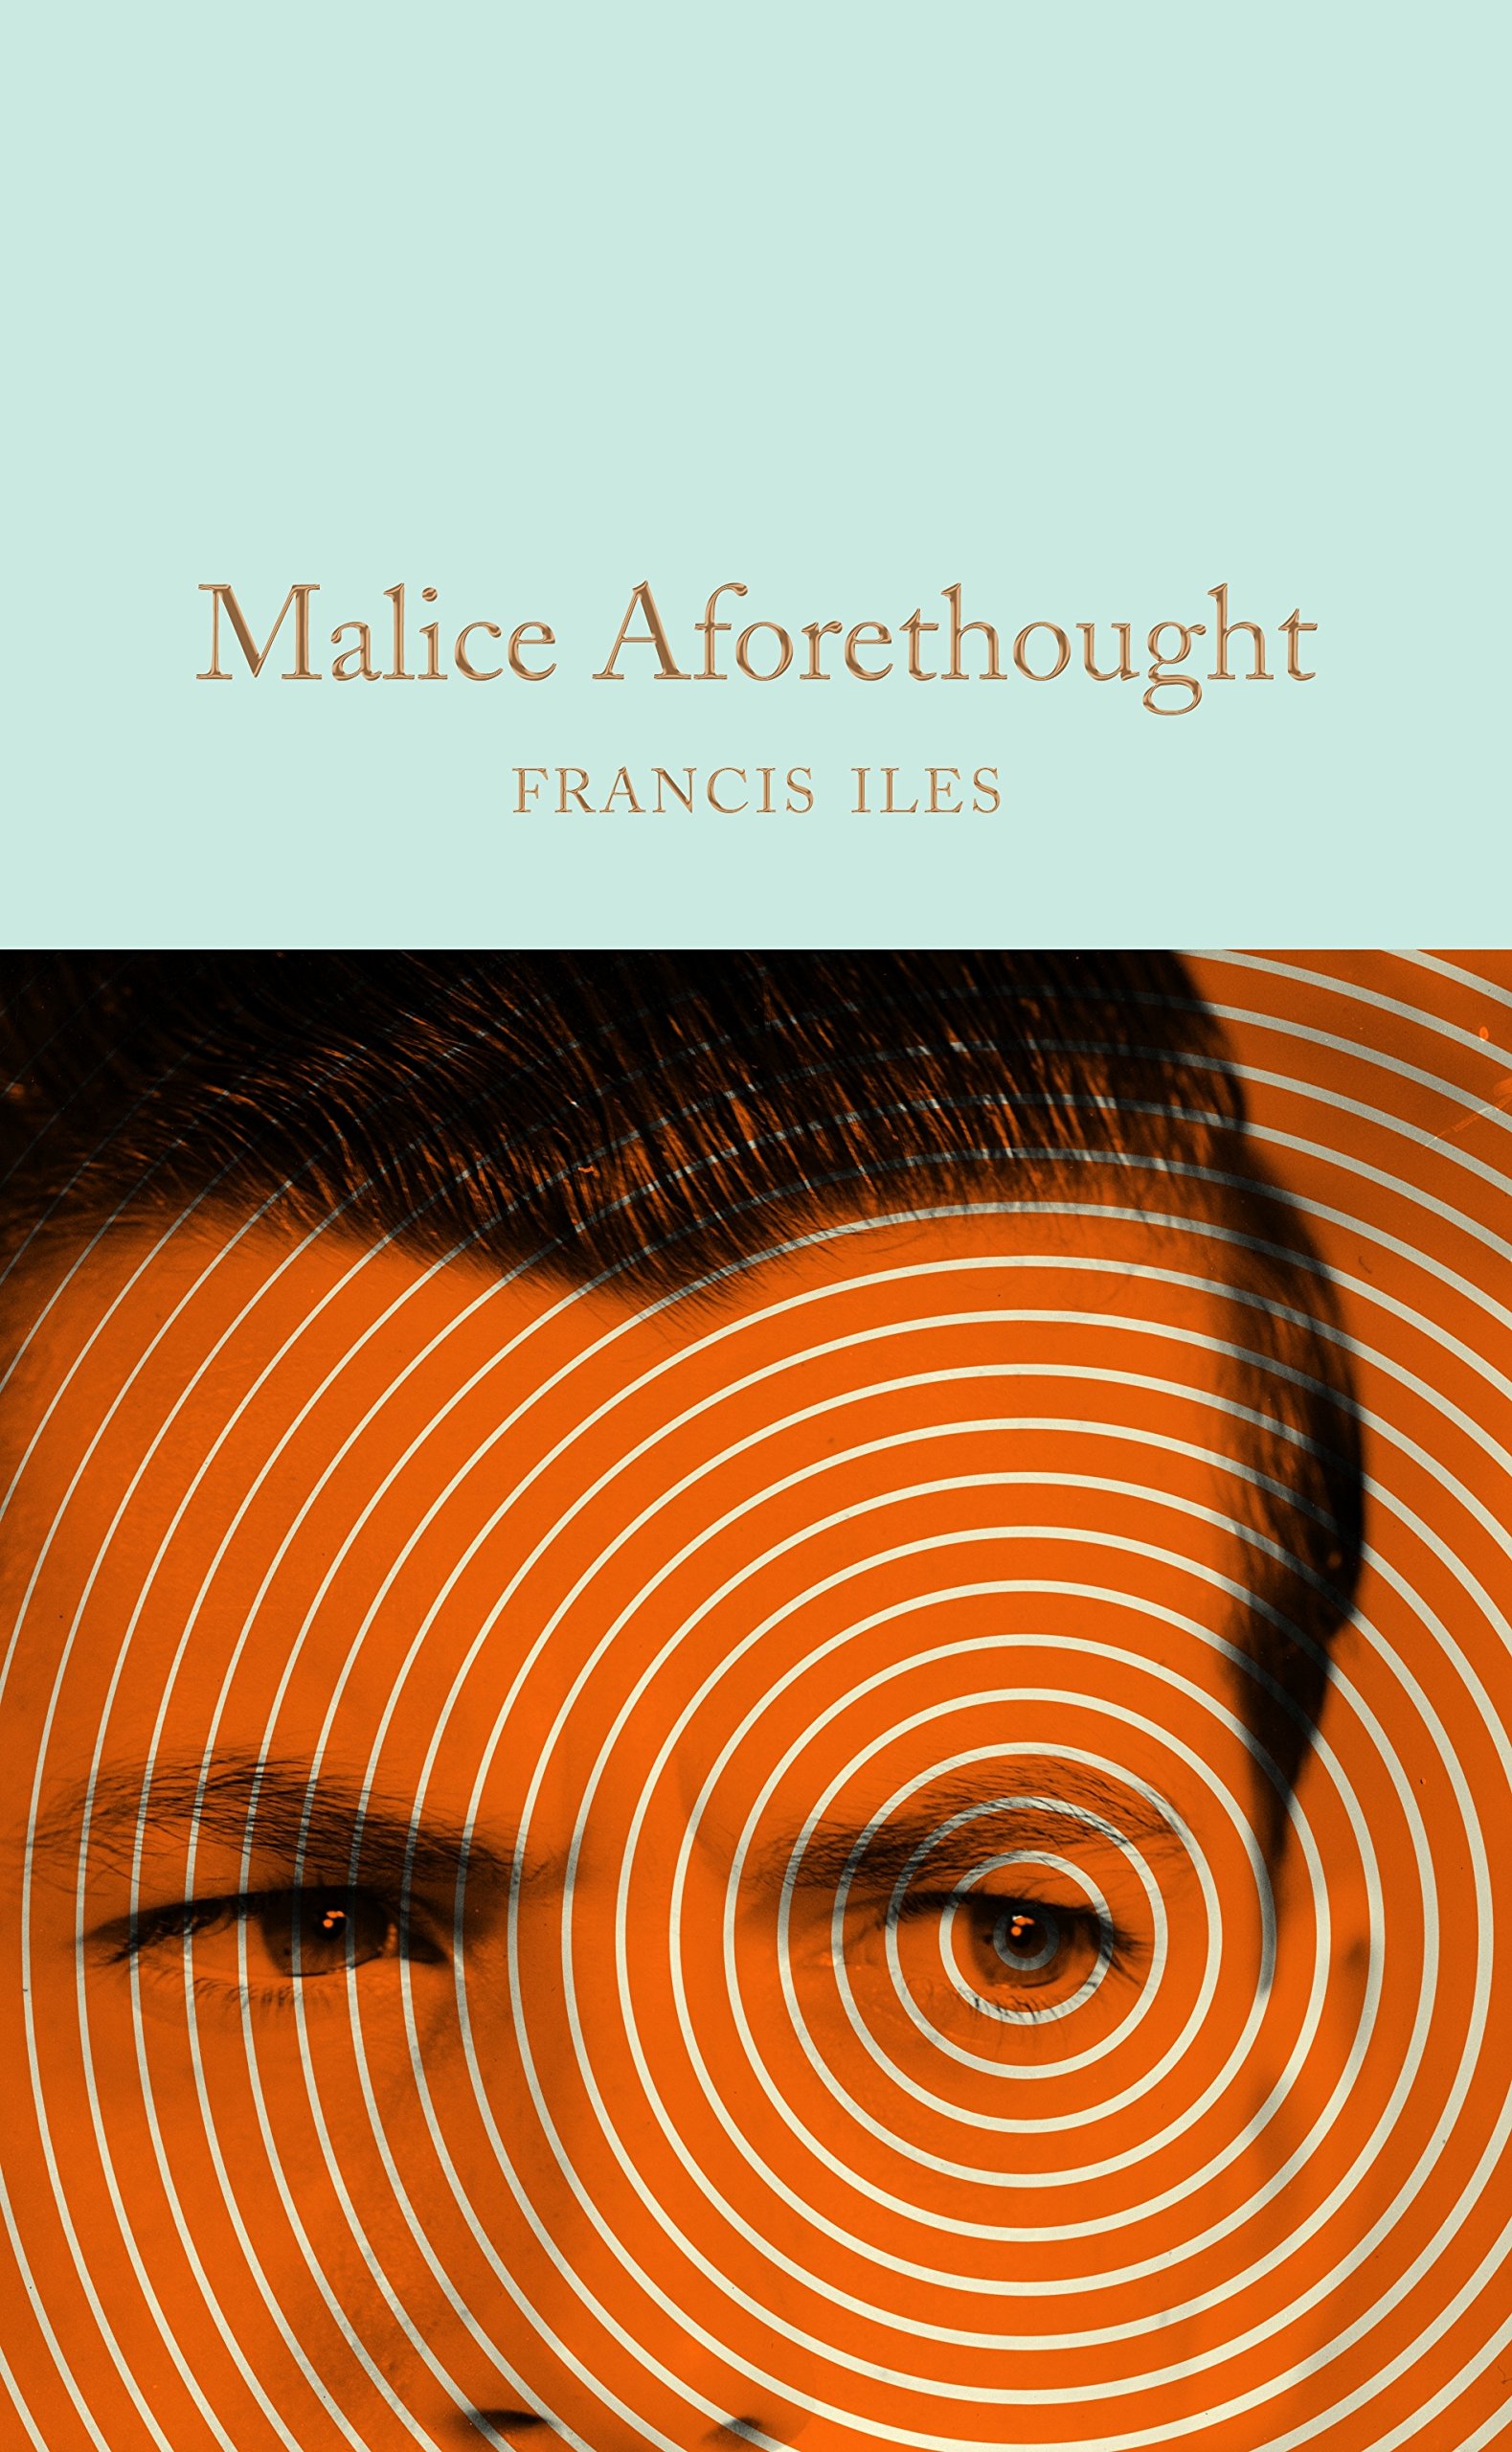 Malice Aforethough | Francis Iles image0